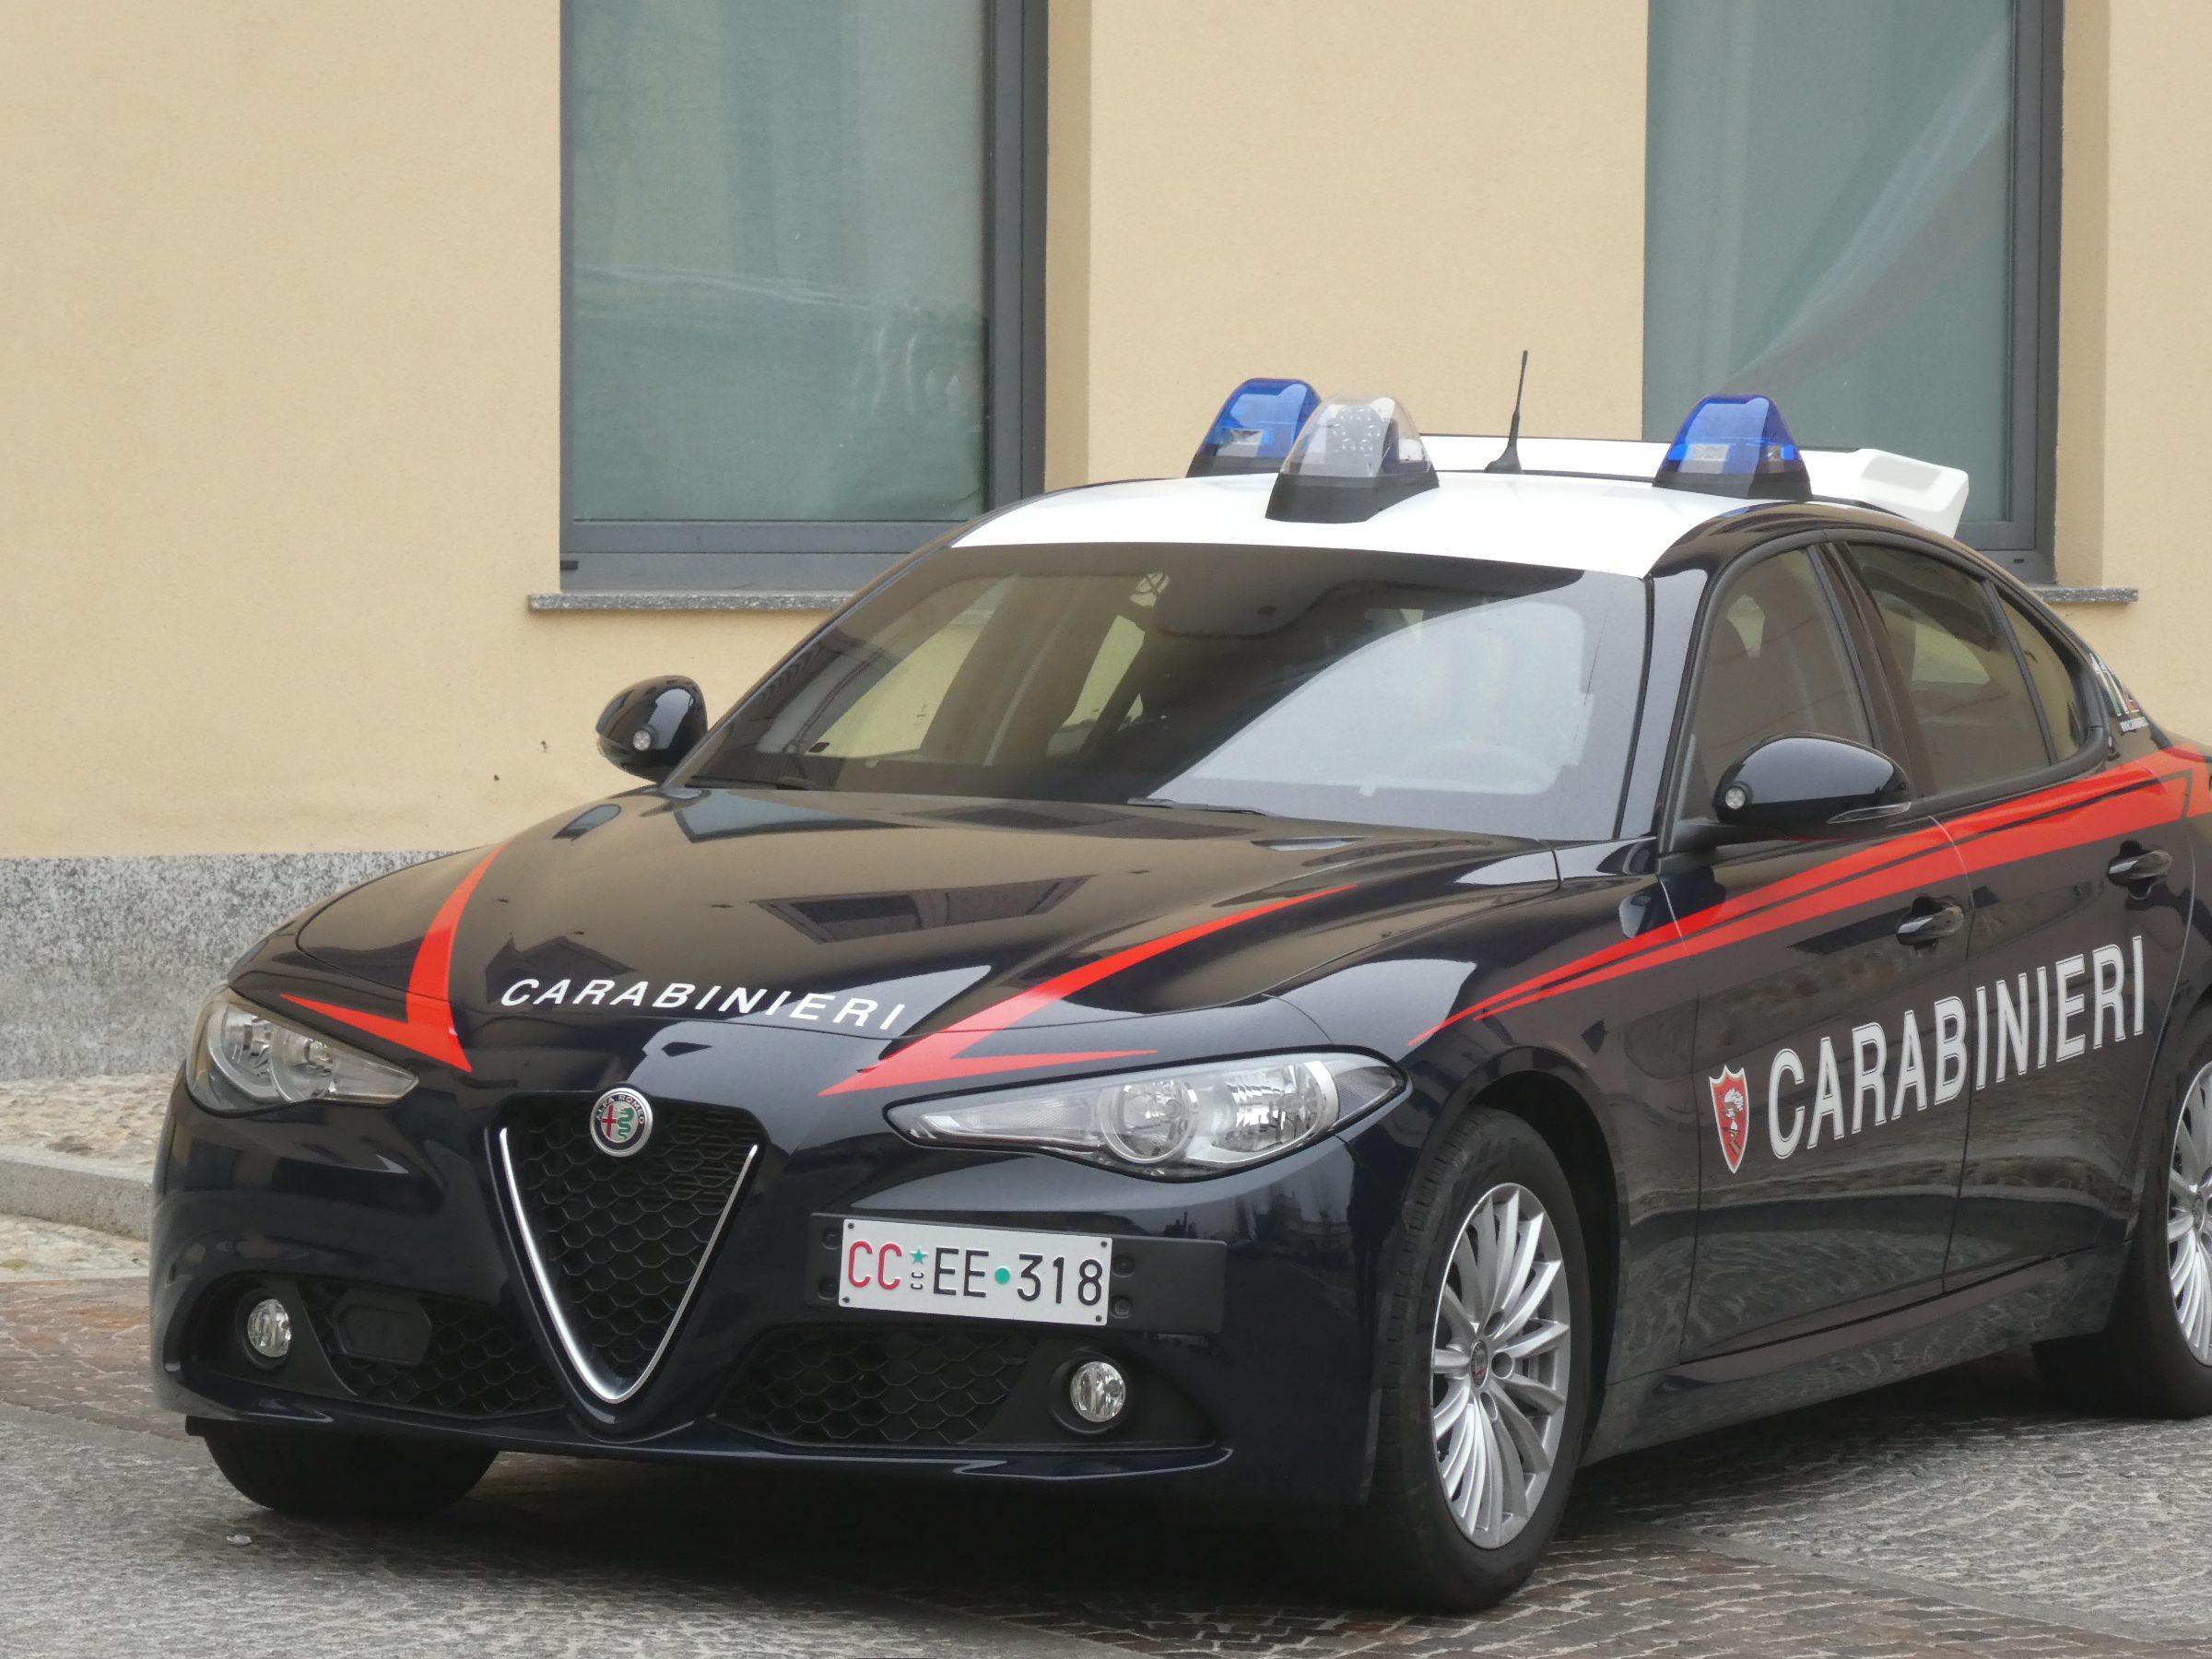 Autore, con il branco, di 4 rapine violente: minorenne fermato dai carabinieri